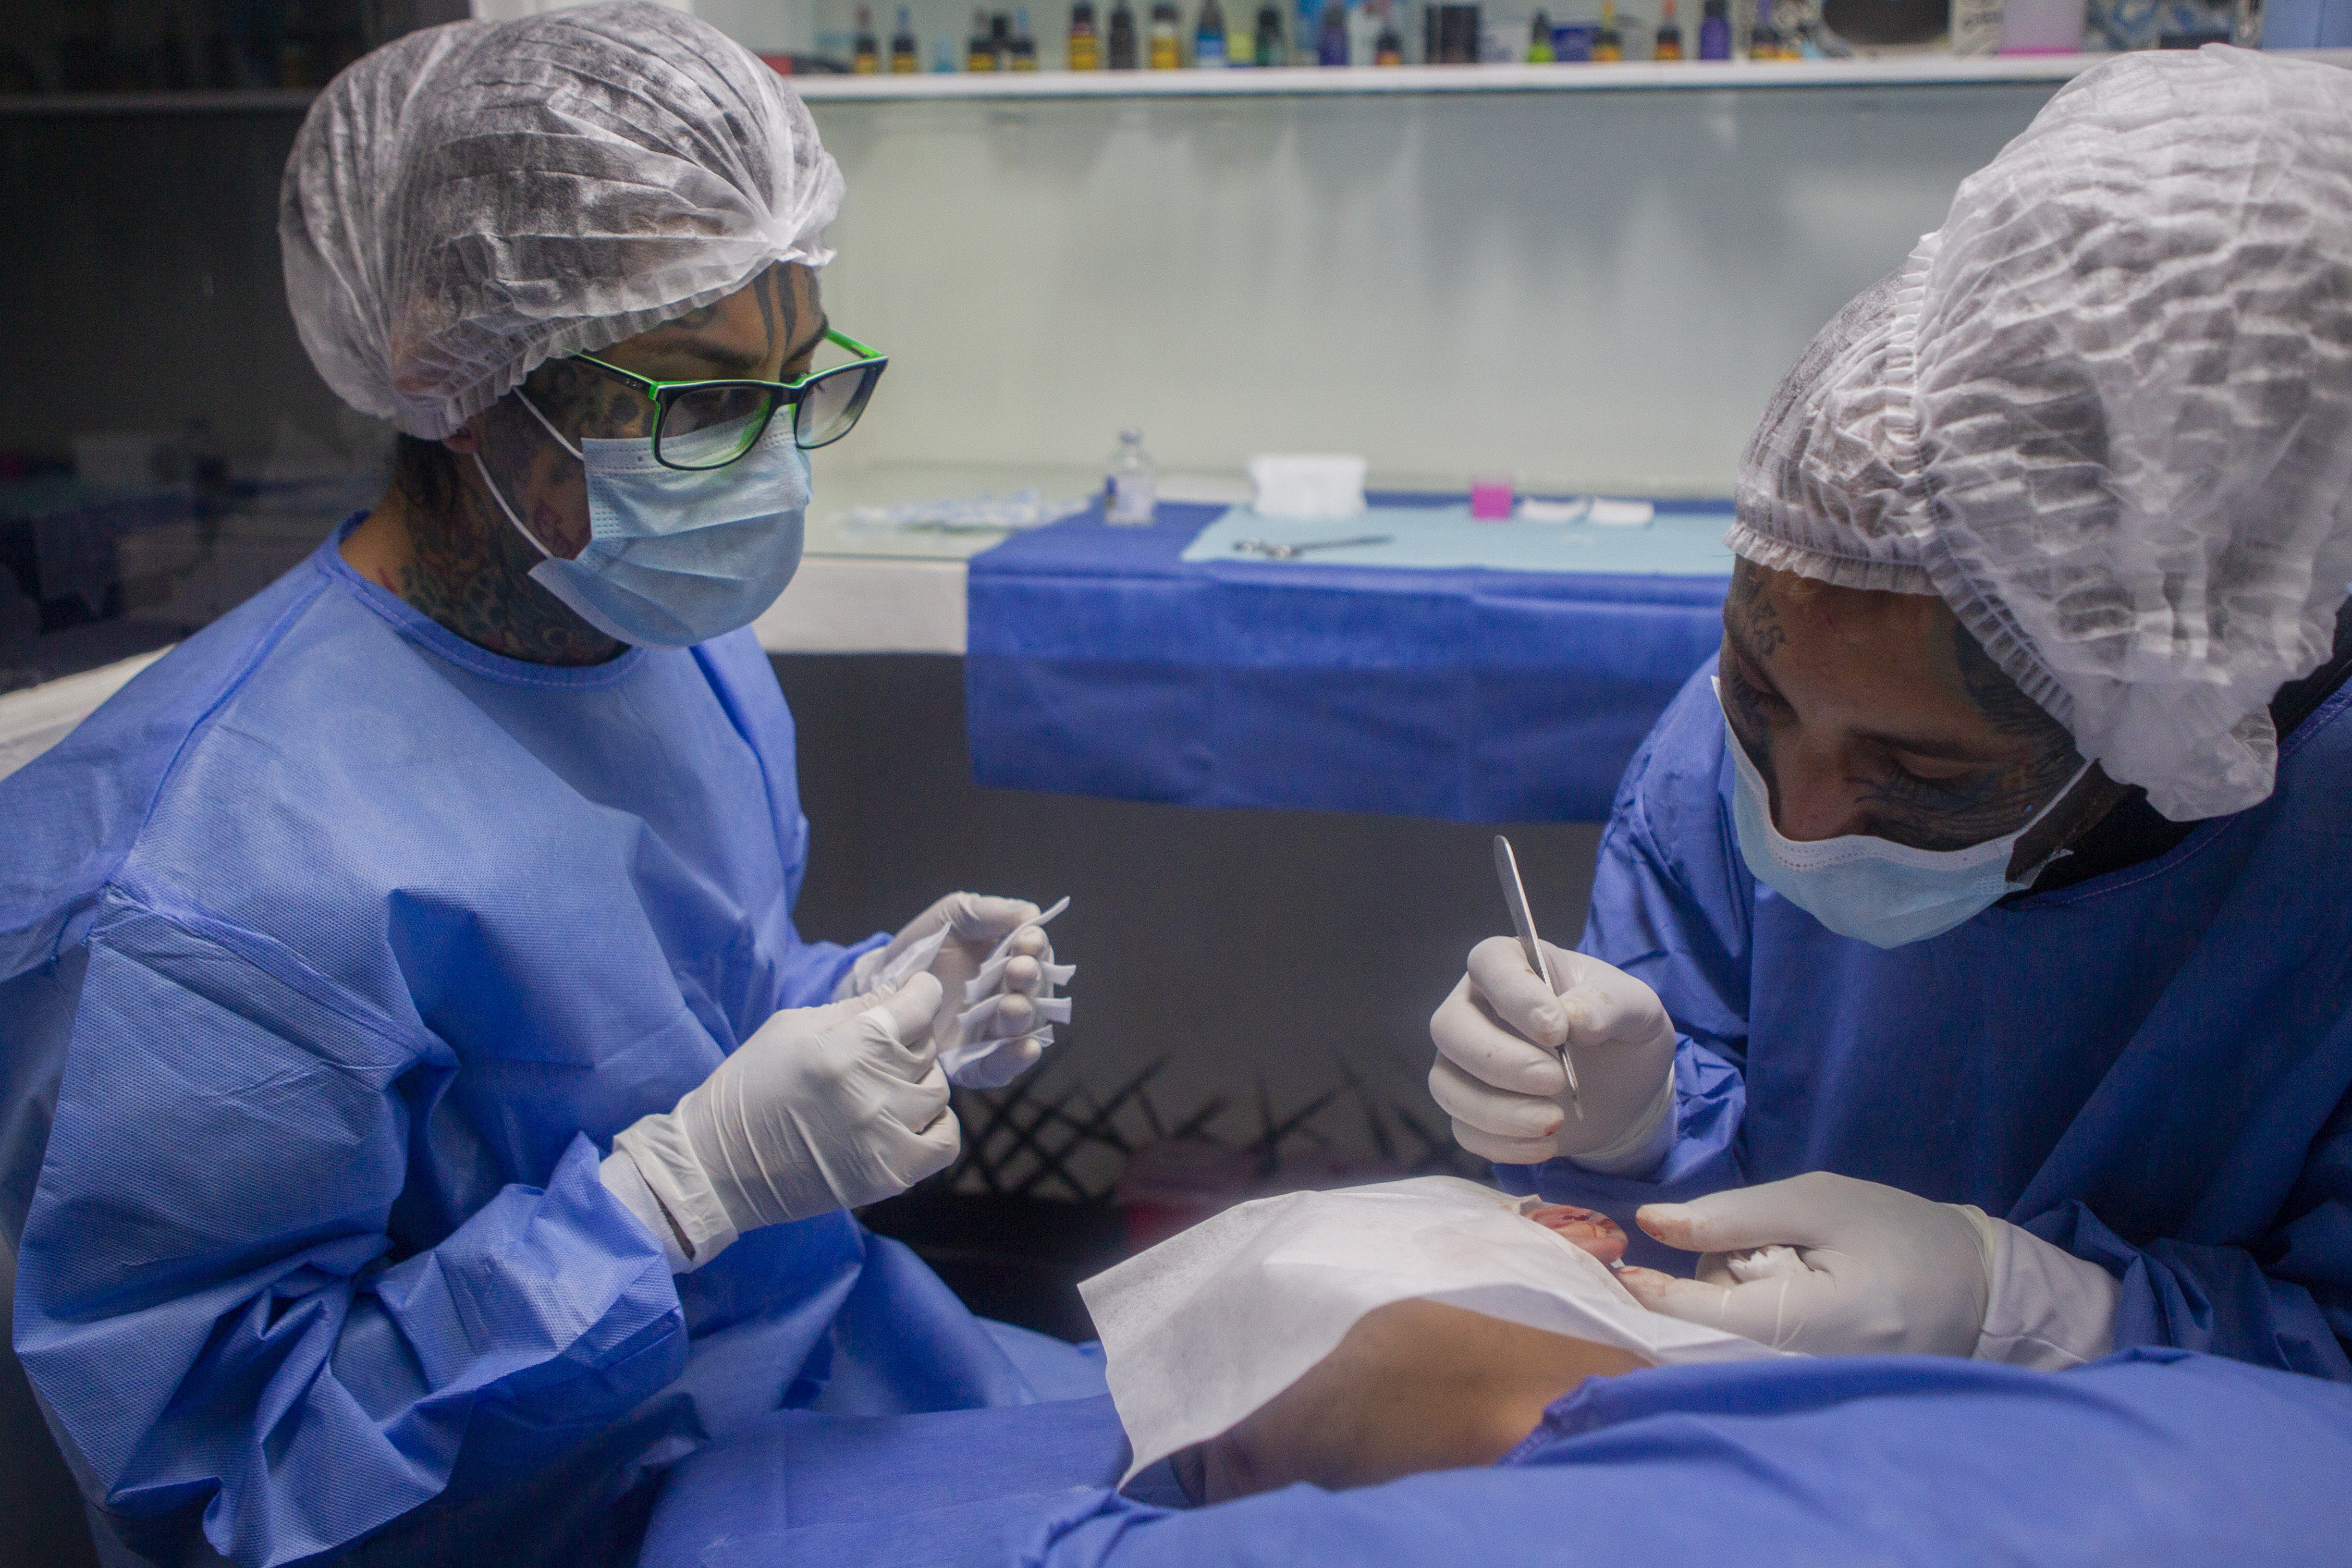 "Plaga" siendo asistido por "Cent" mientras realiza el corte de un fragmento de la oreja.
Noviembre 29, 2021
Foto: Karina Hernández / Infobae